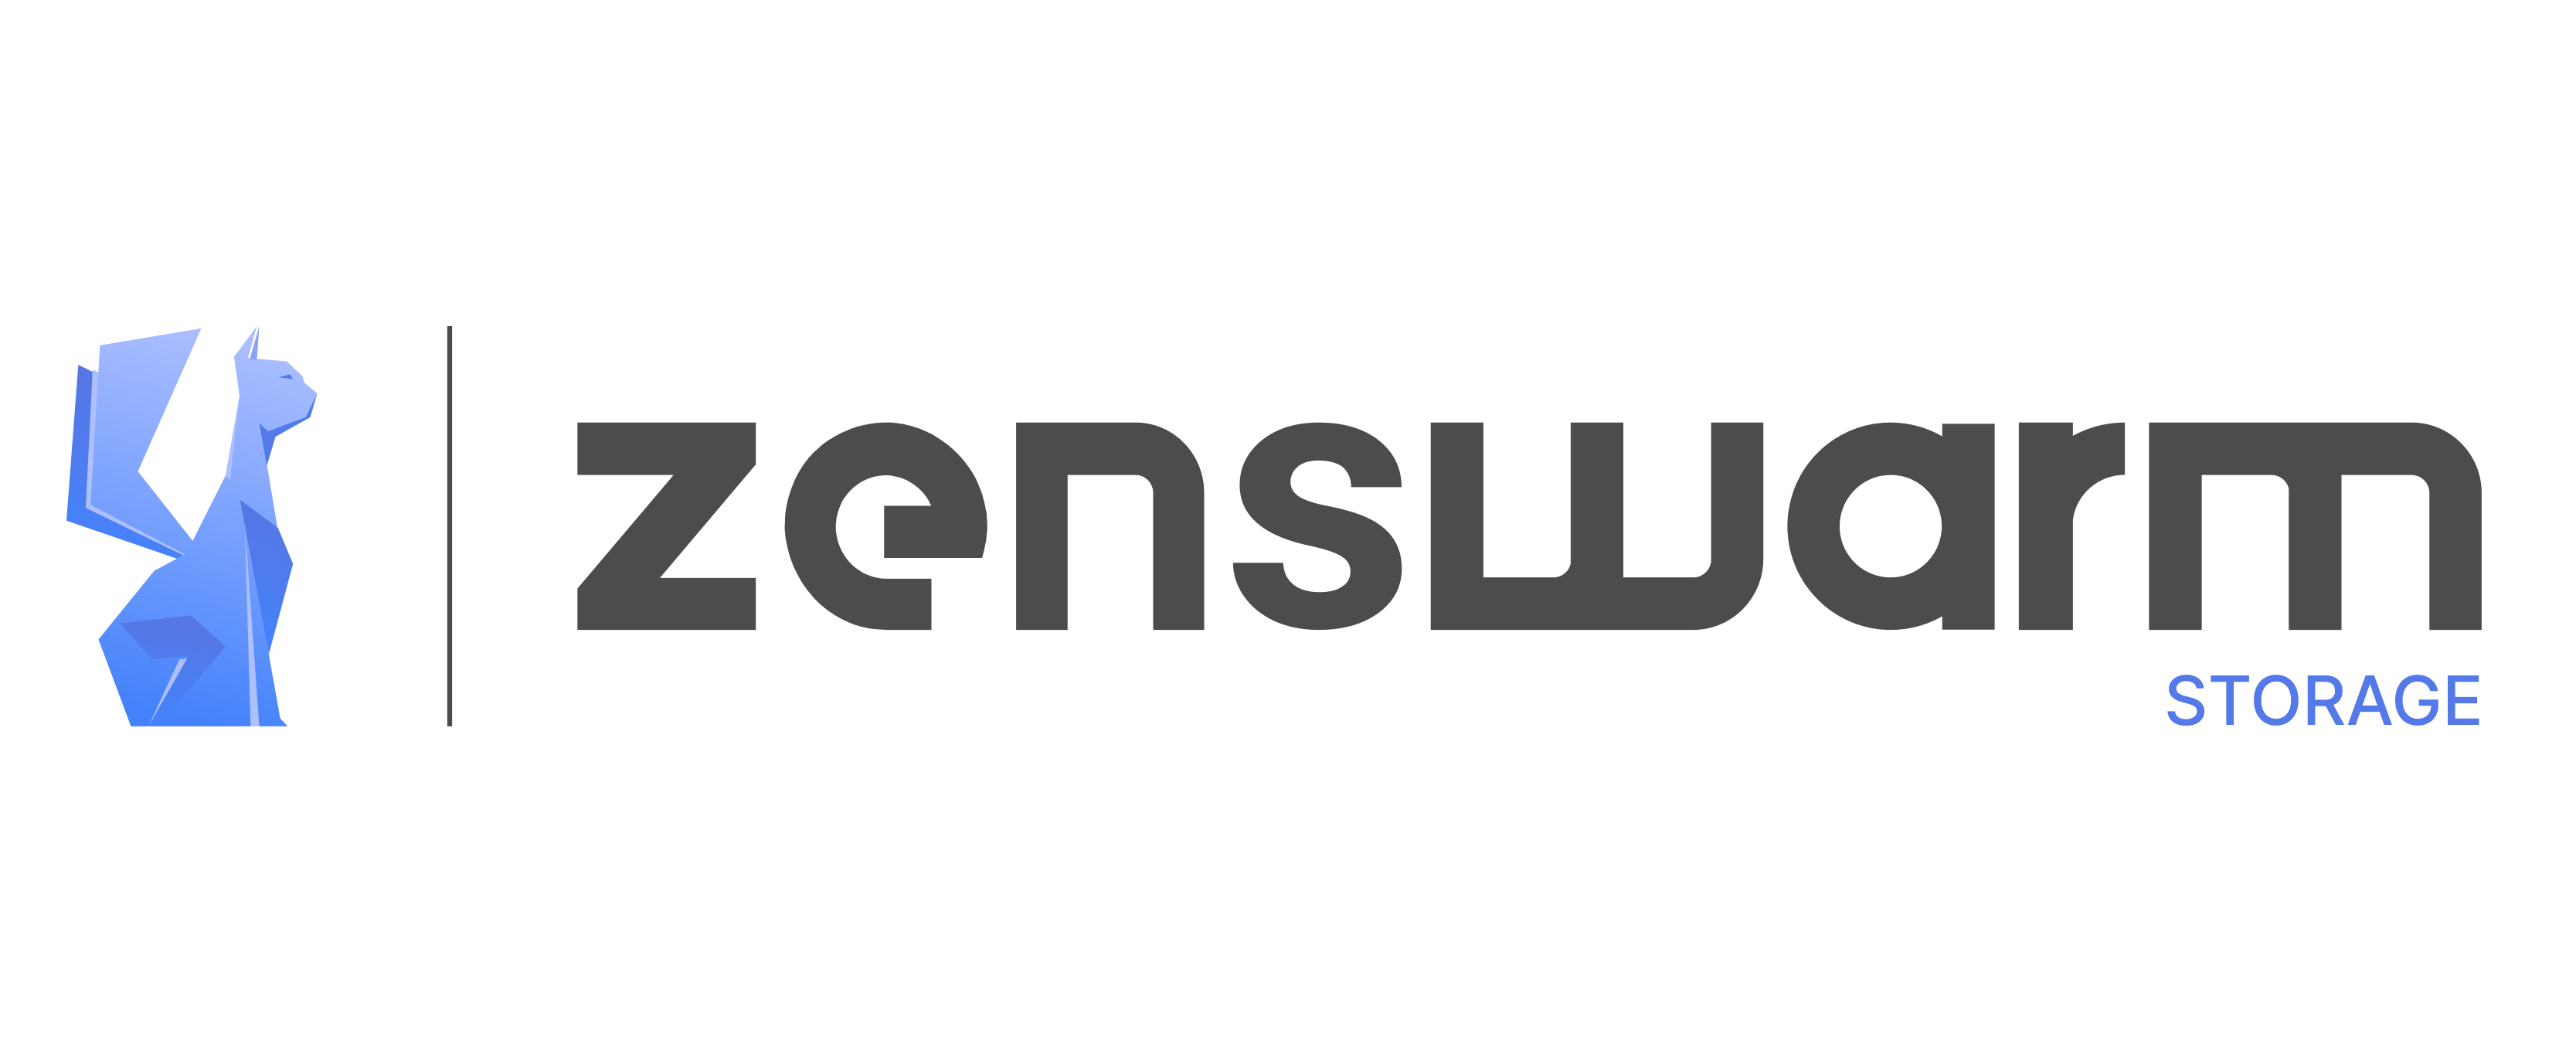 Zenswarm storage logo